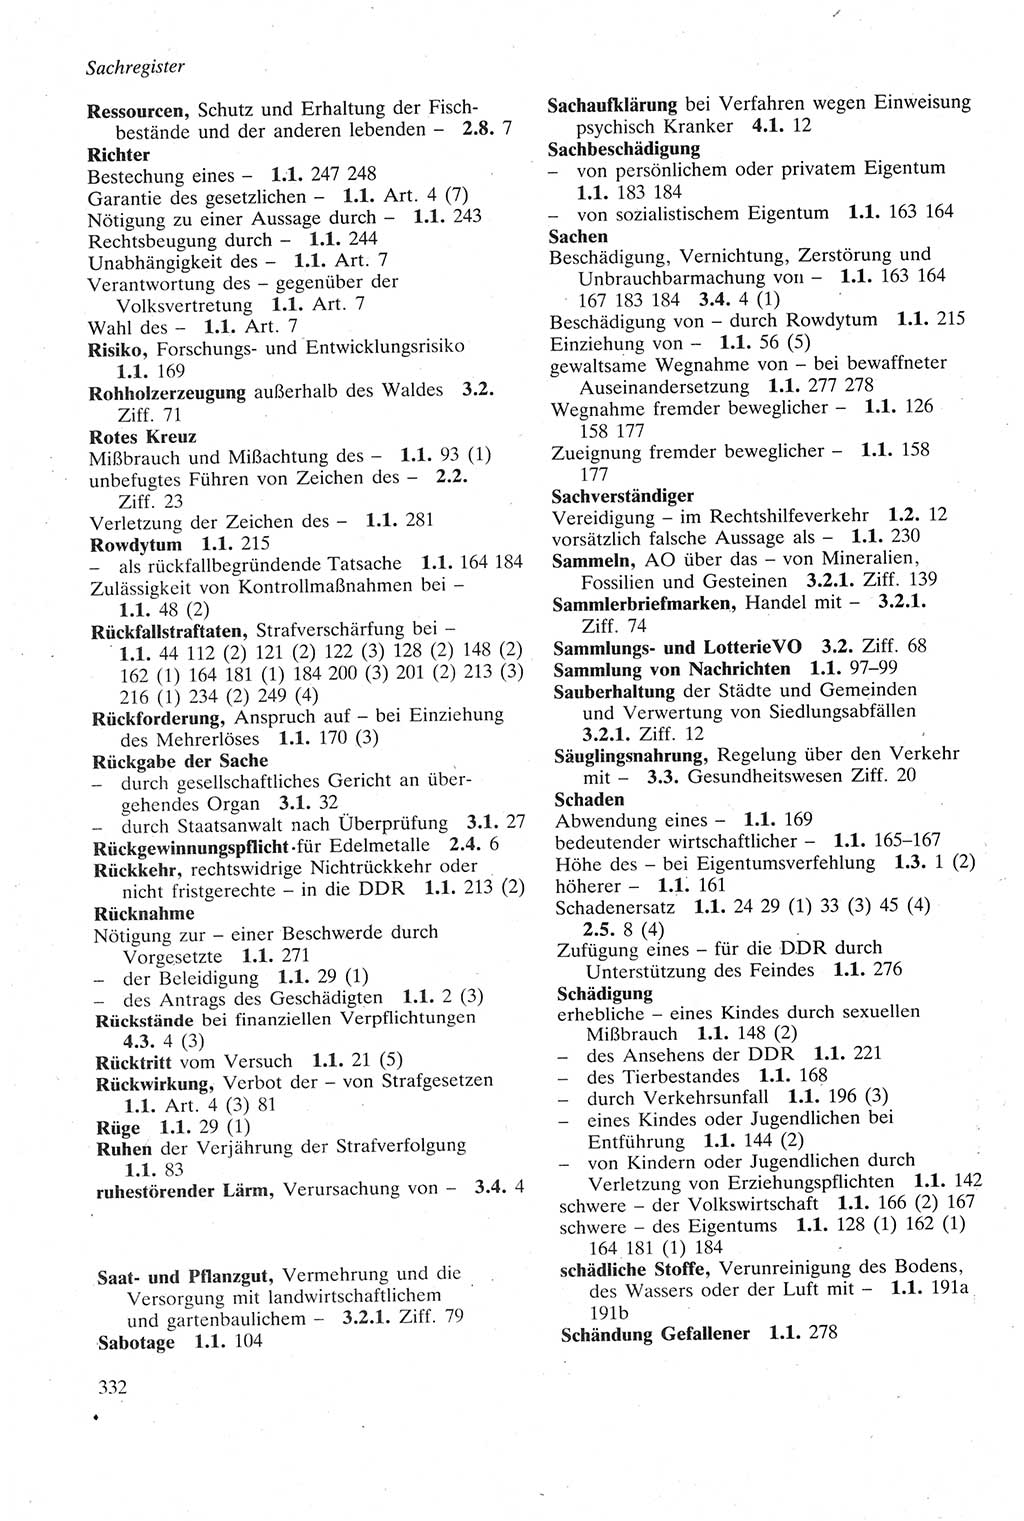 Strafgesetzbuch (StGB) der Deutschen Demokratischen Republik (DDR) sowie angrenzende Gesetze und Bestimmungen 1979, Seite 332 (StGB DDR Ges. Best. 1979, S. 332)